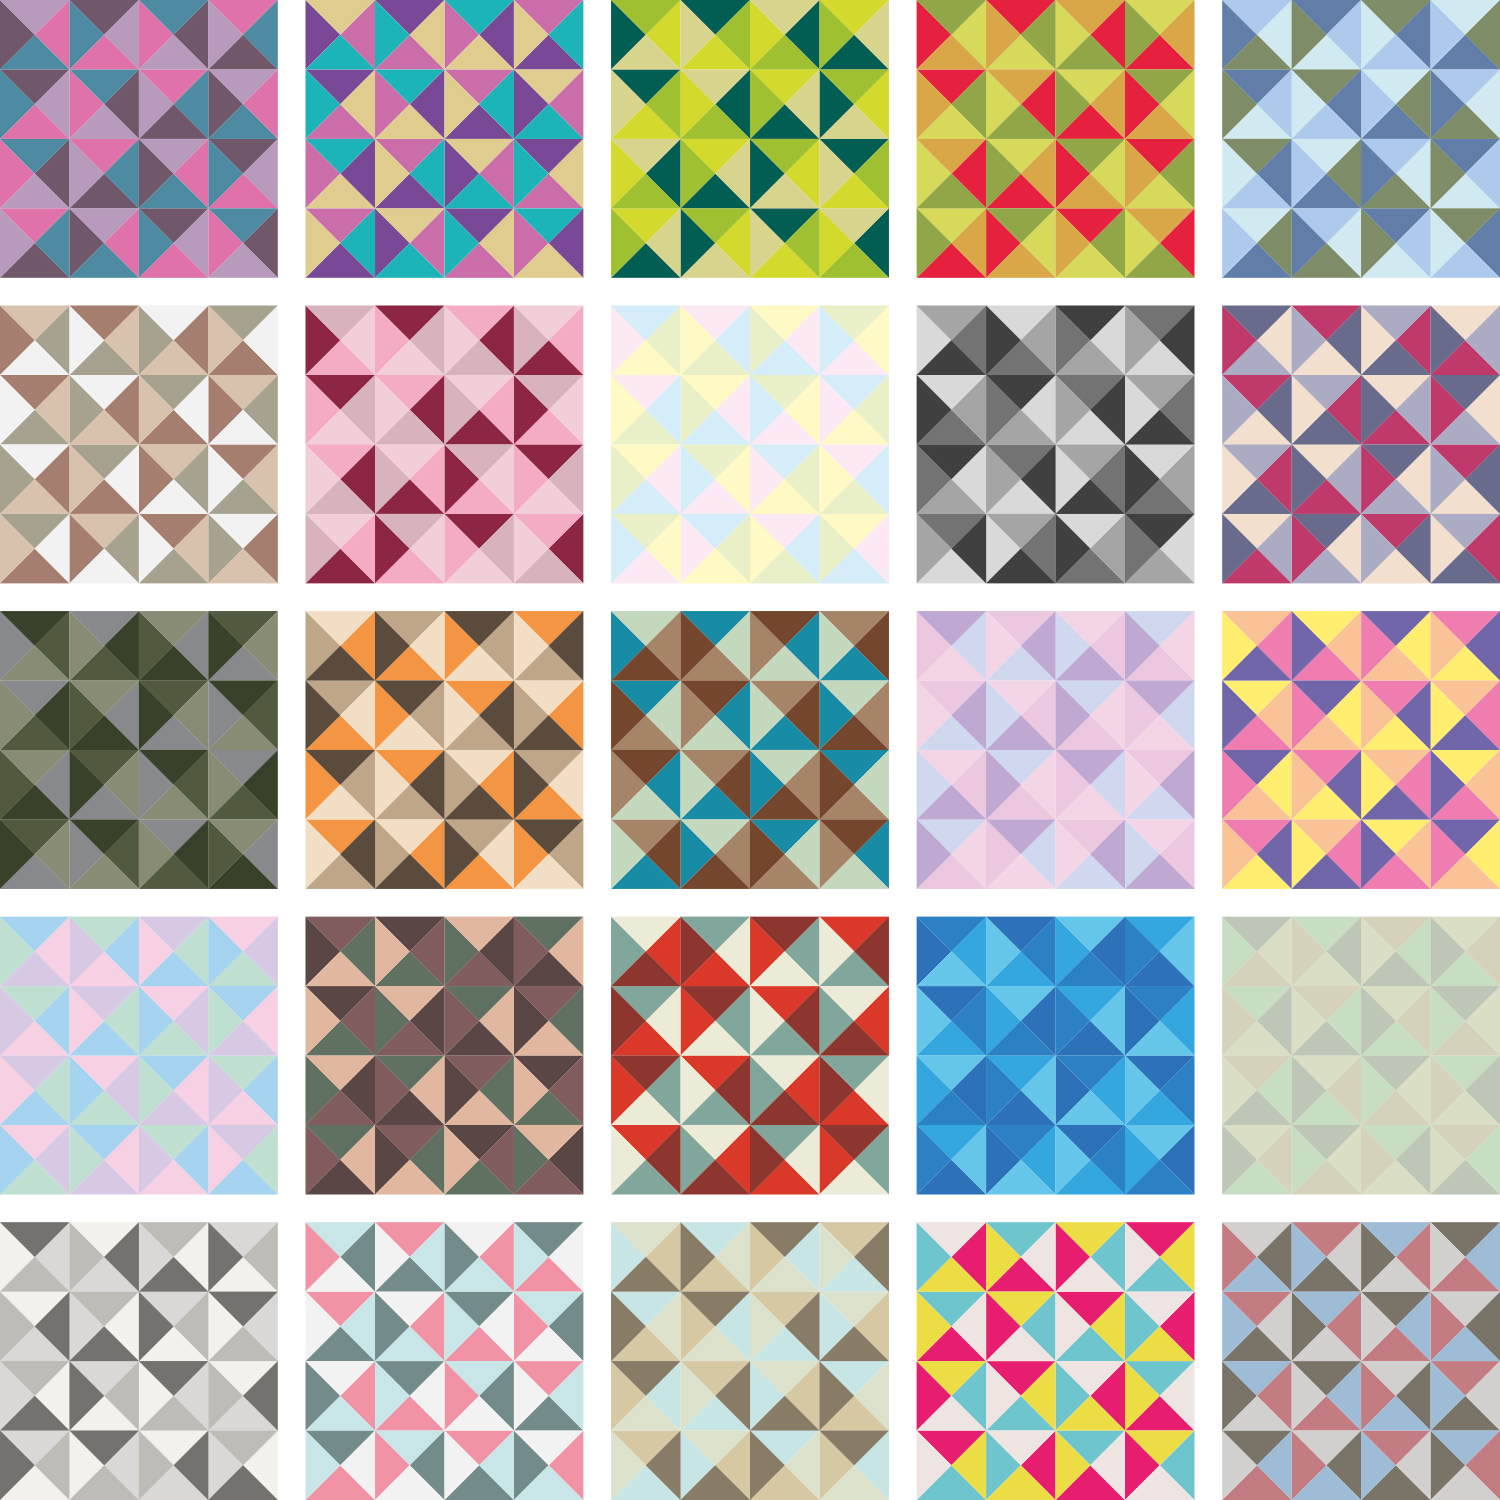 Farbversionen der 25 Wallpaper